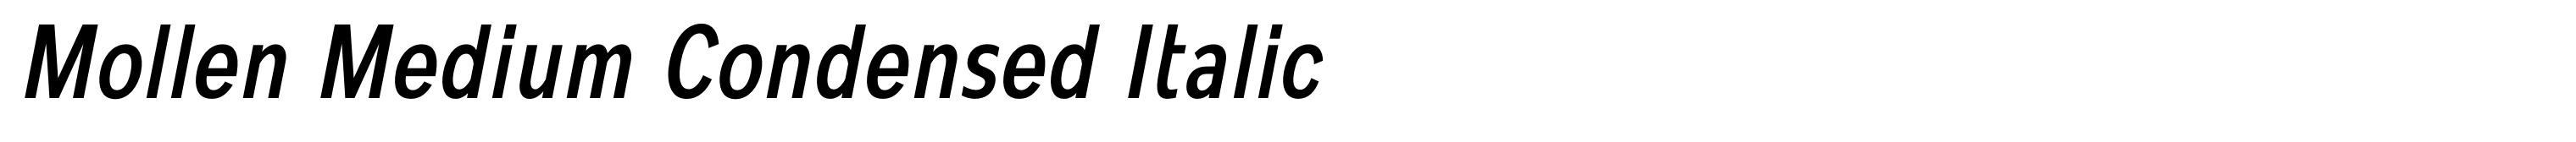 Mollen Medium Condensed Italic